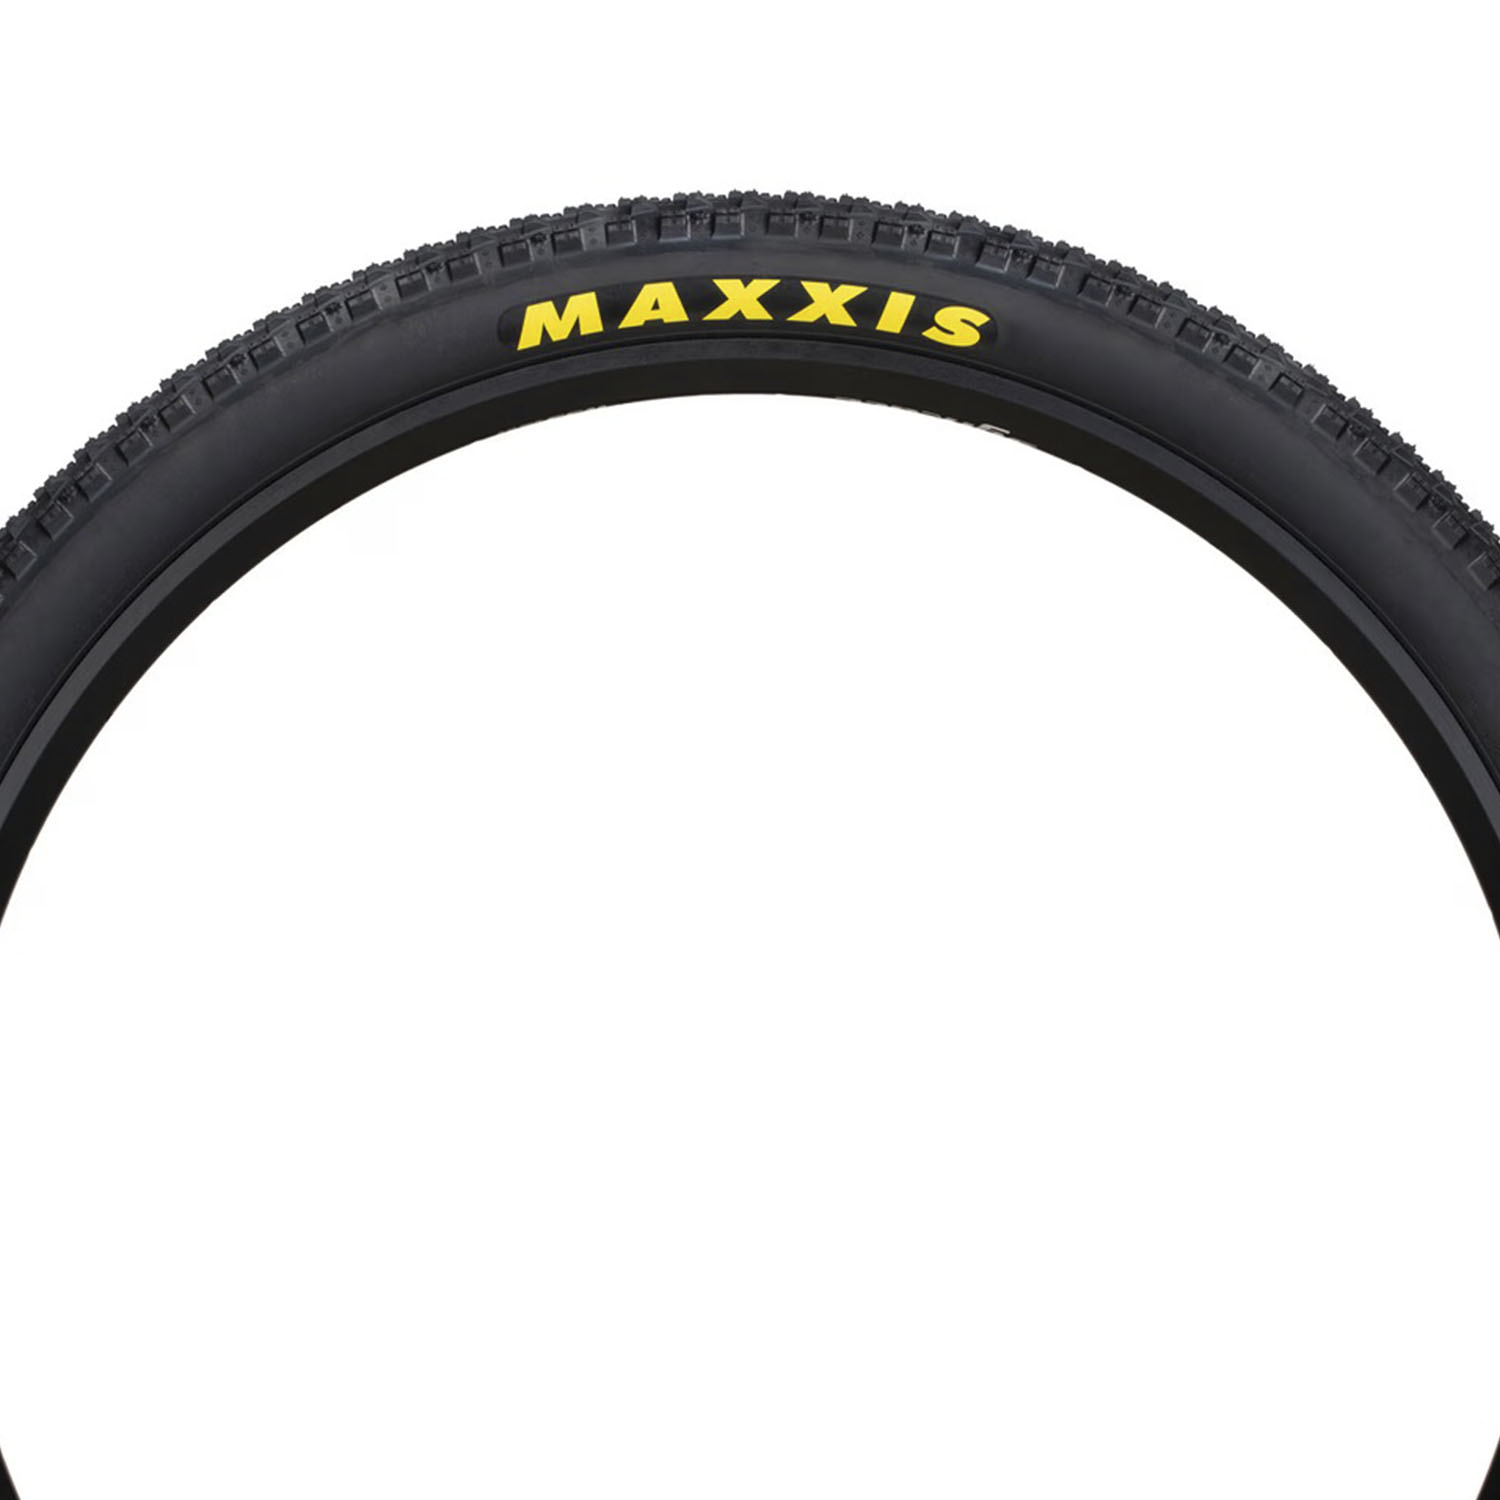 Велопокрышка Maxxis Crossmark II 29x2.25 57-622